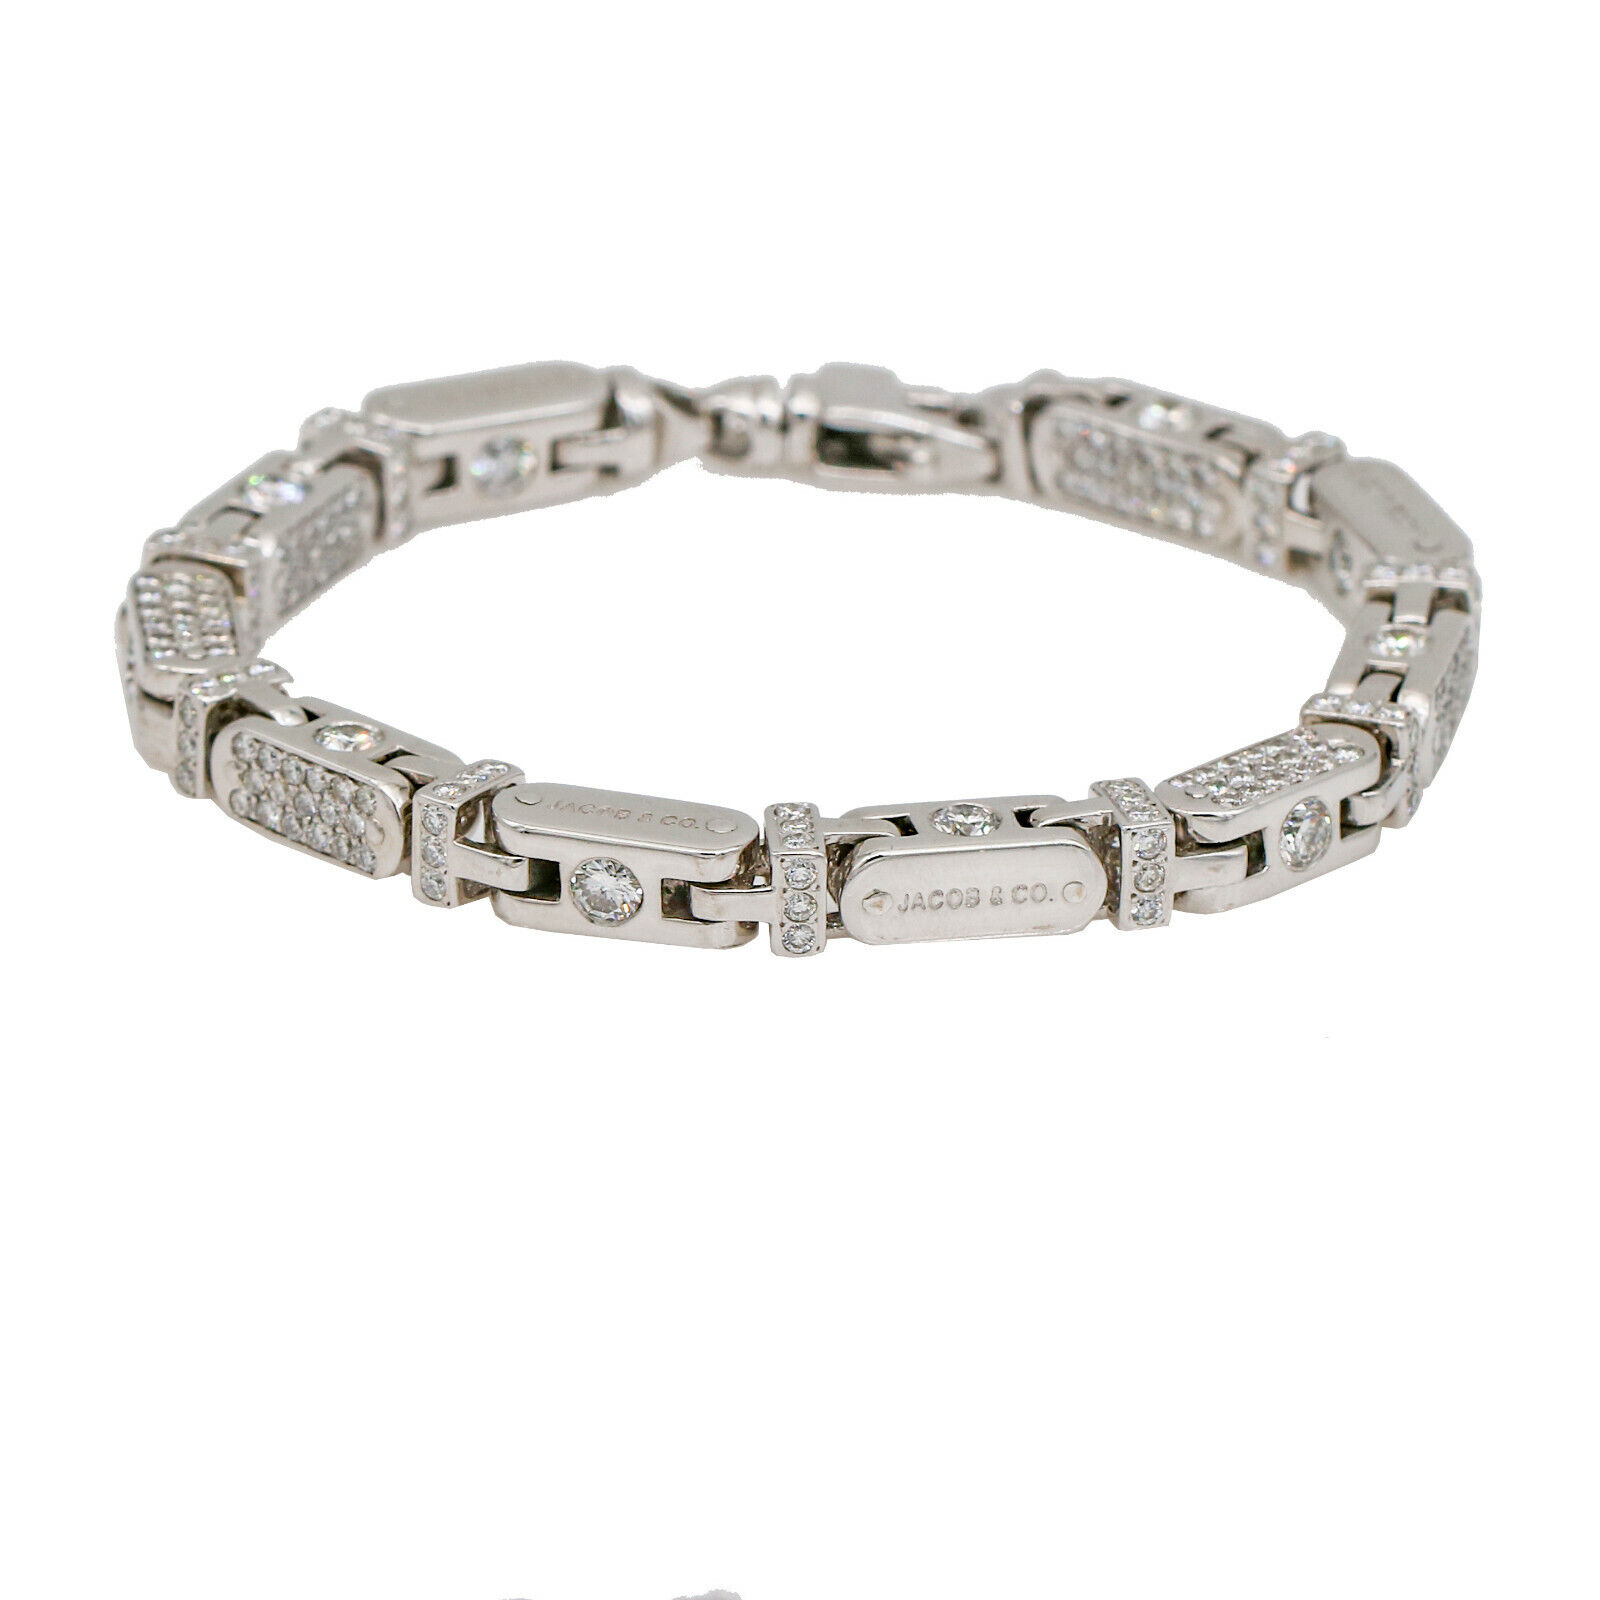 Jacob & Co. Men's Pave Diamond Capsule Link Bracelet in 18k White